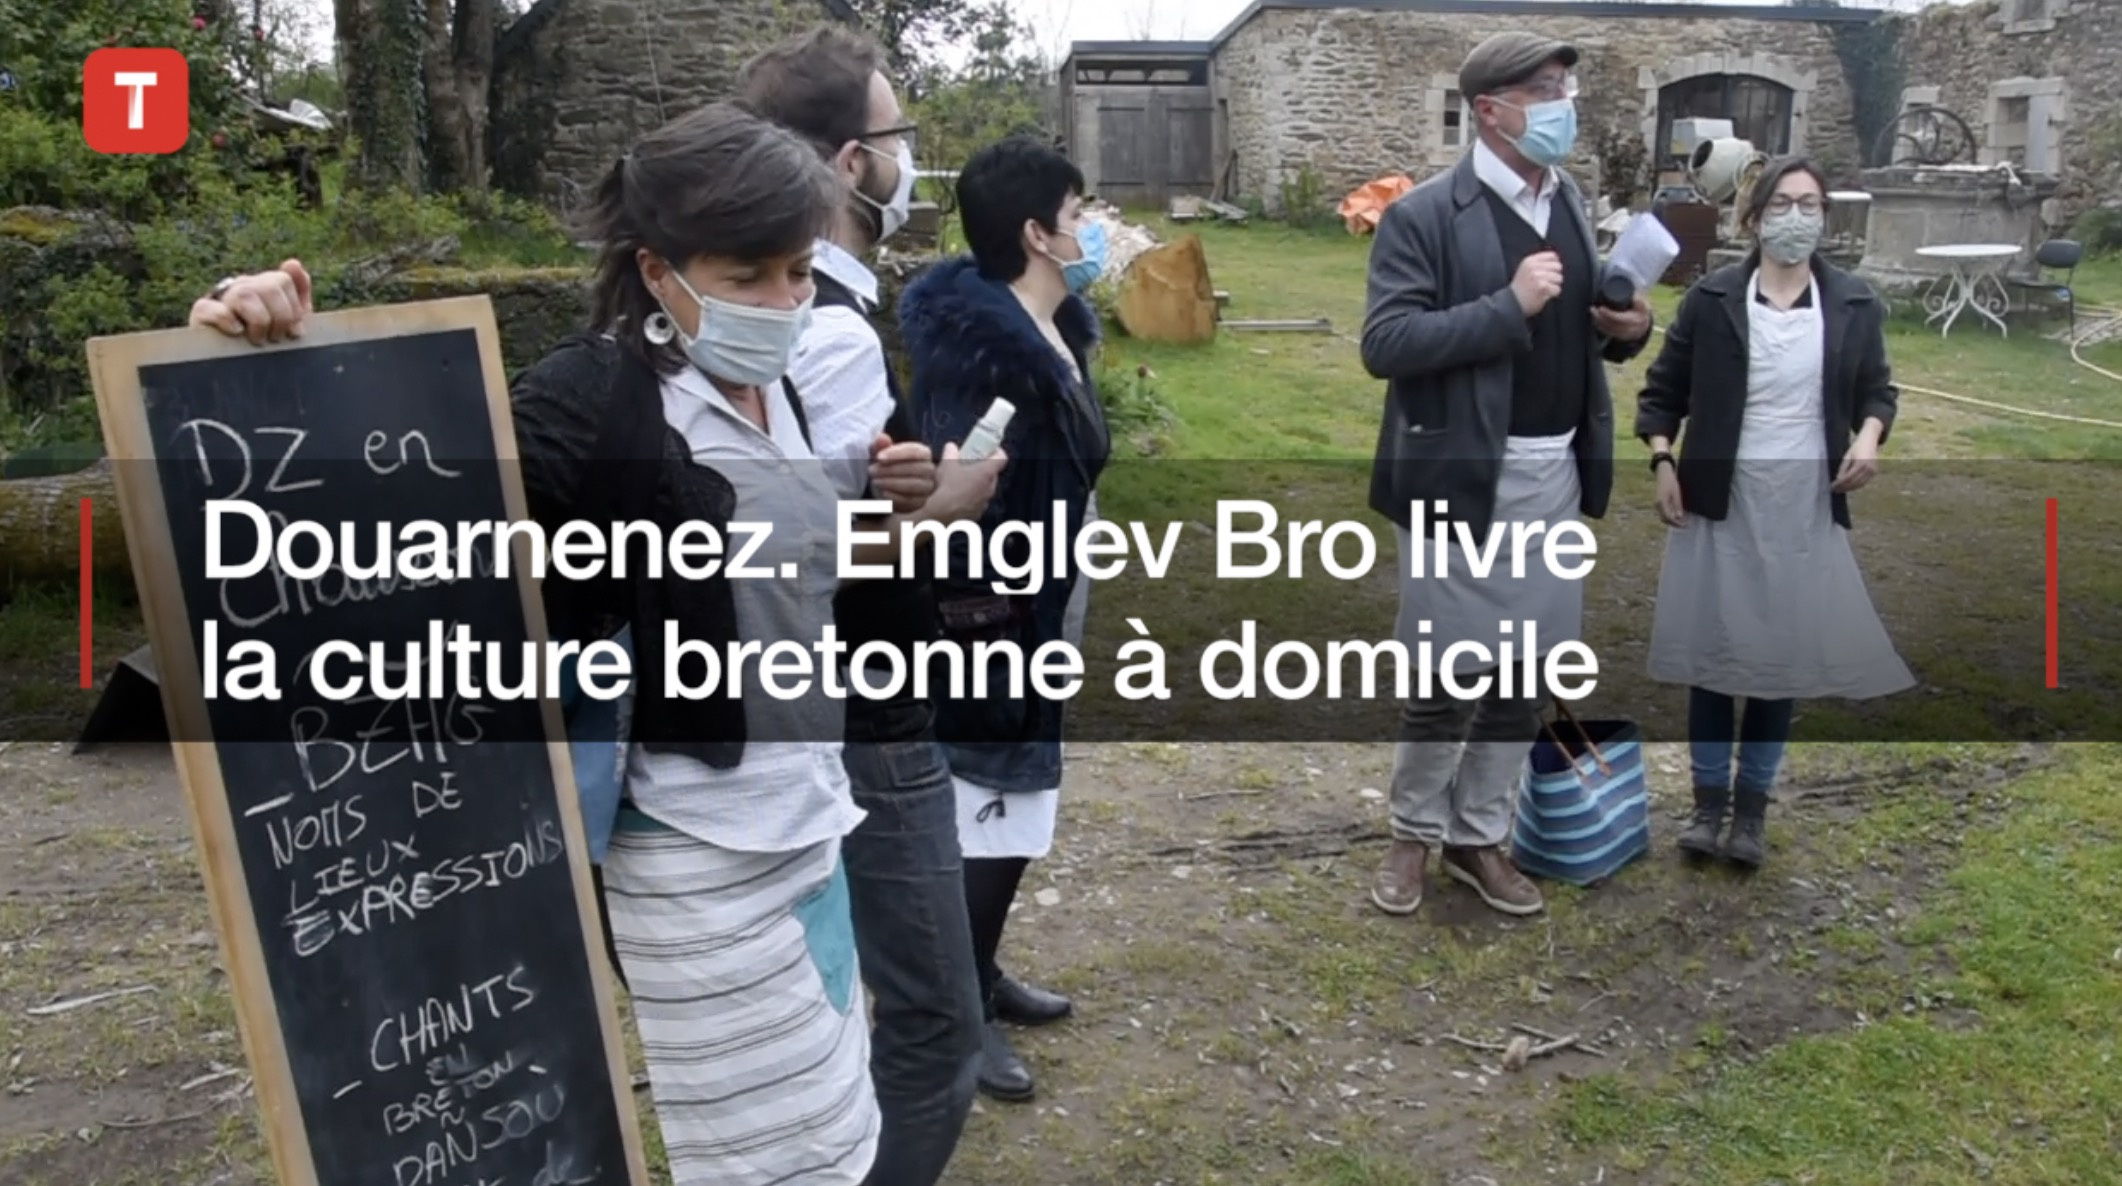 Douarnenez. Emglev Bro livre la culture bretonne à domicile (Le Télégramme)